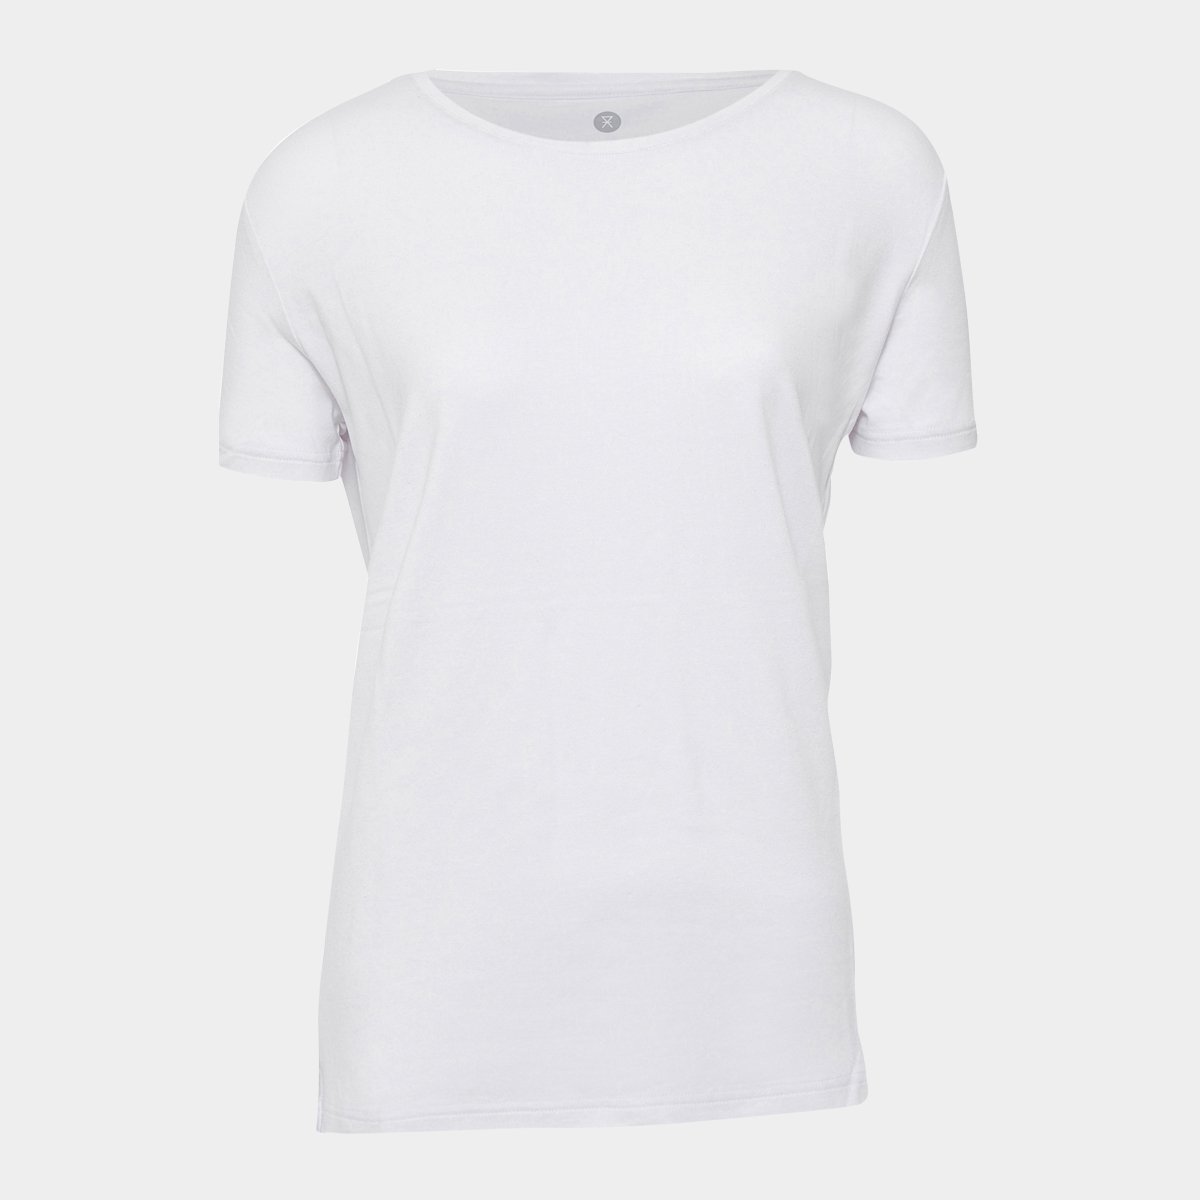 Hvid basic bambus T-shirt til kvinder fra JBS of Denmark, XL